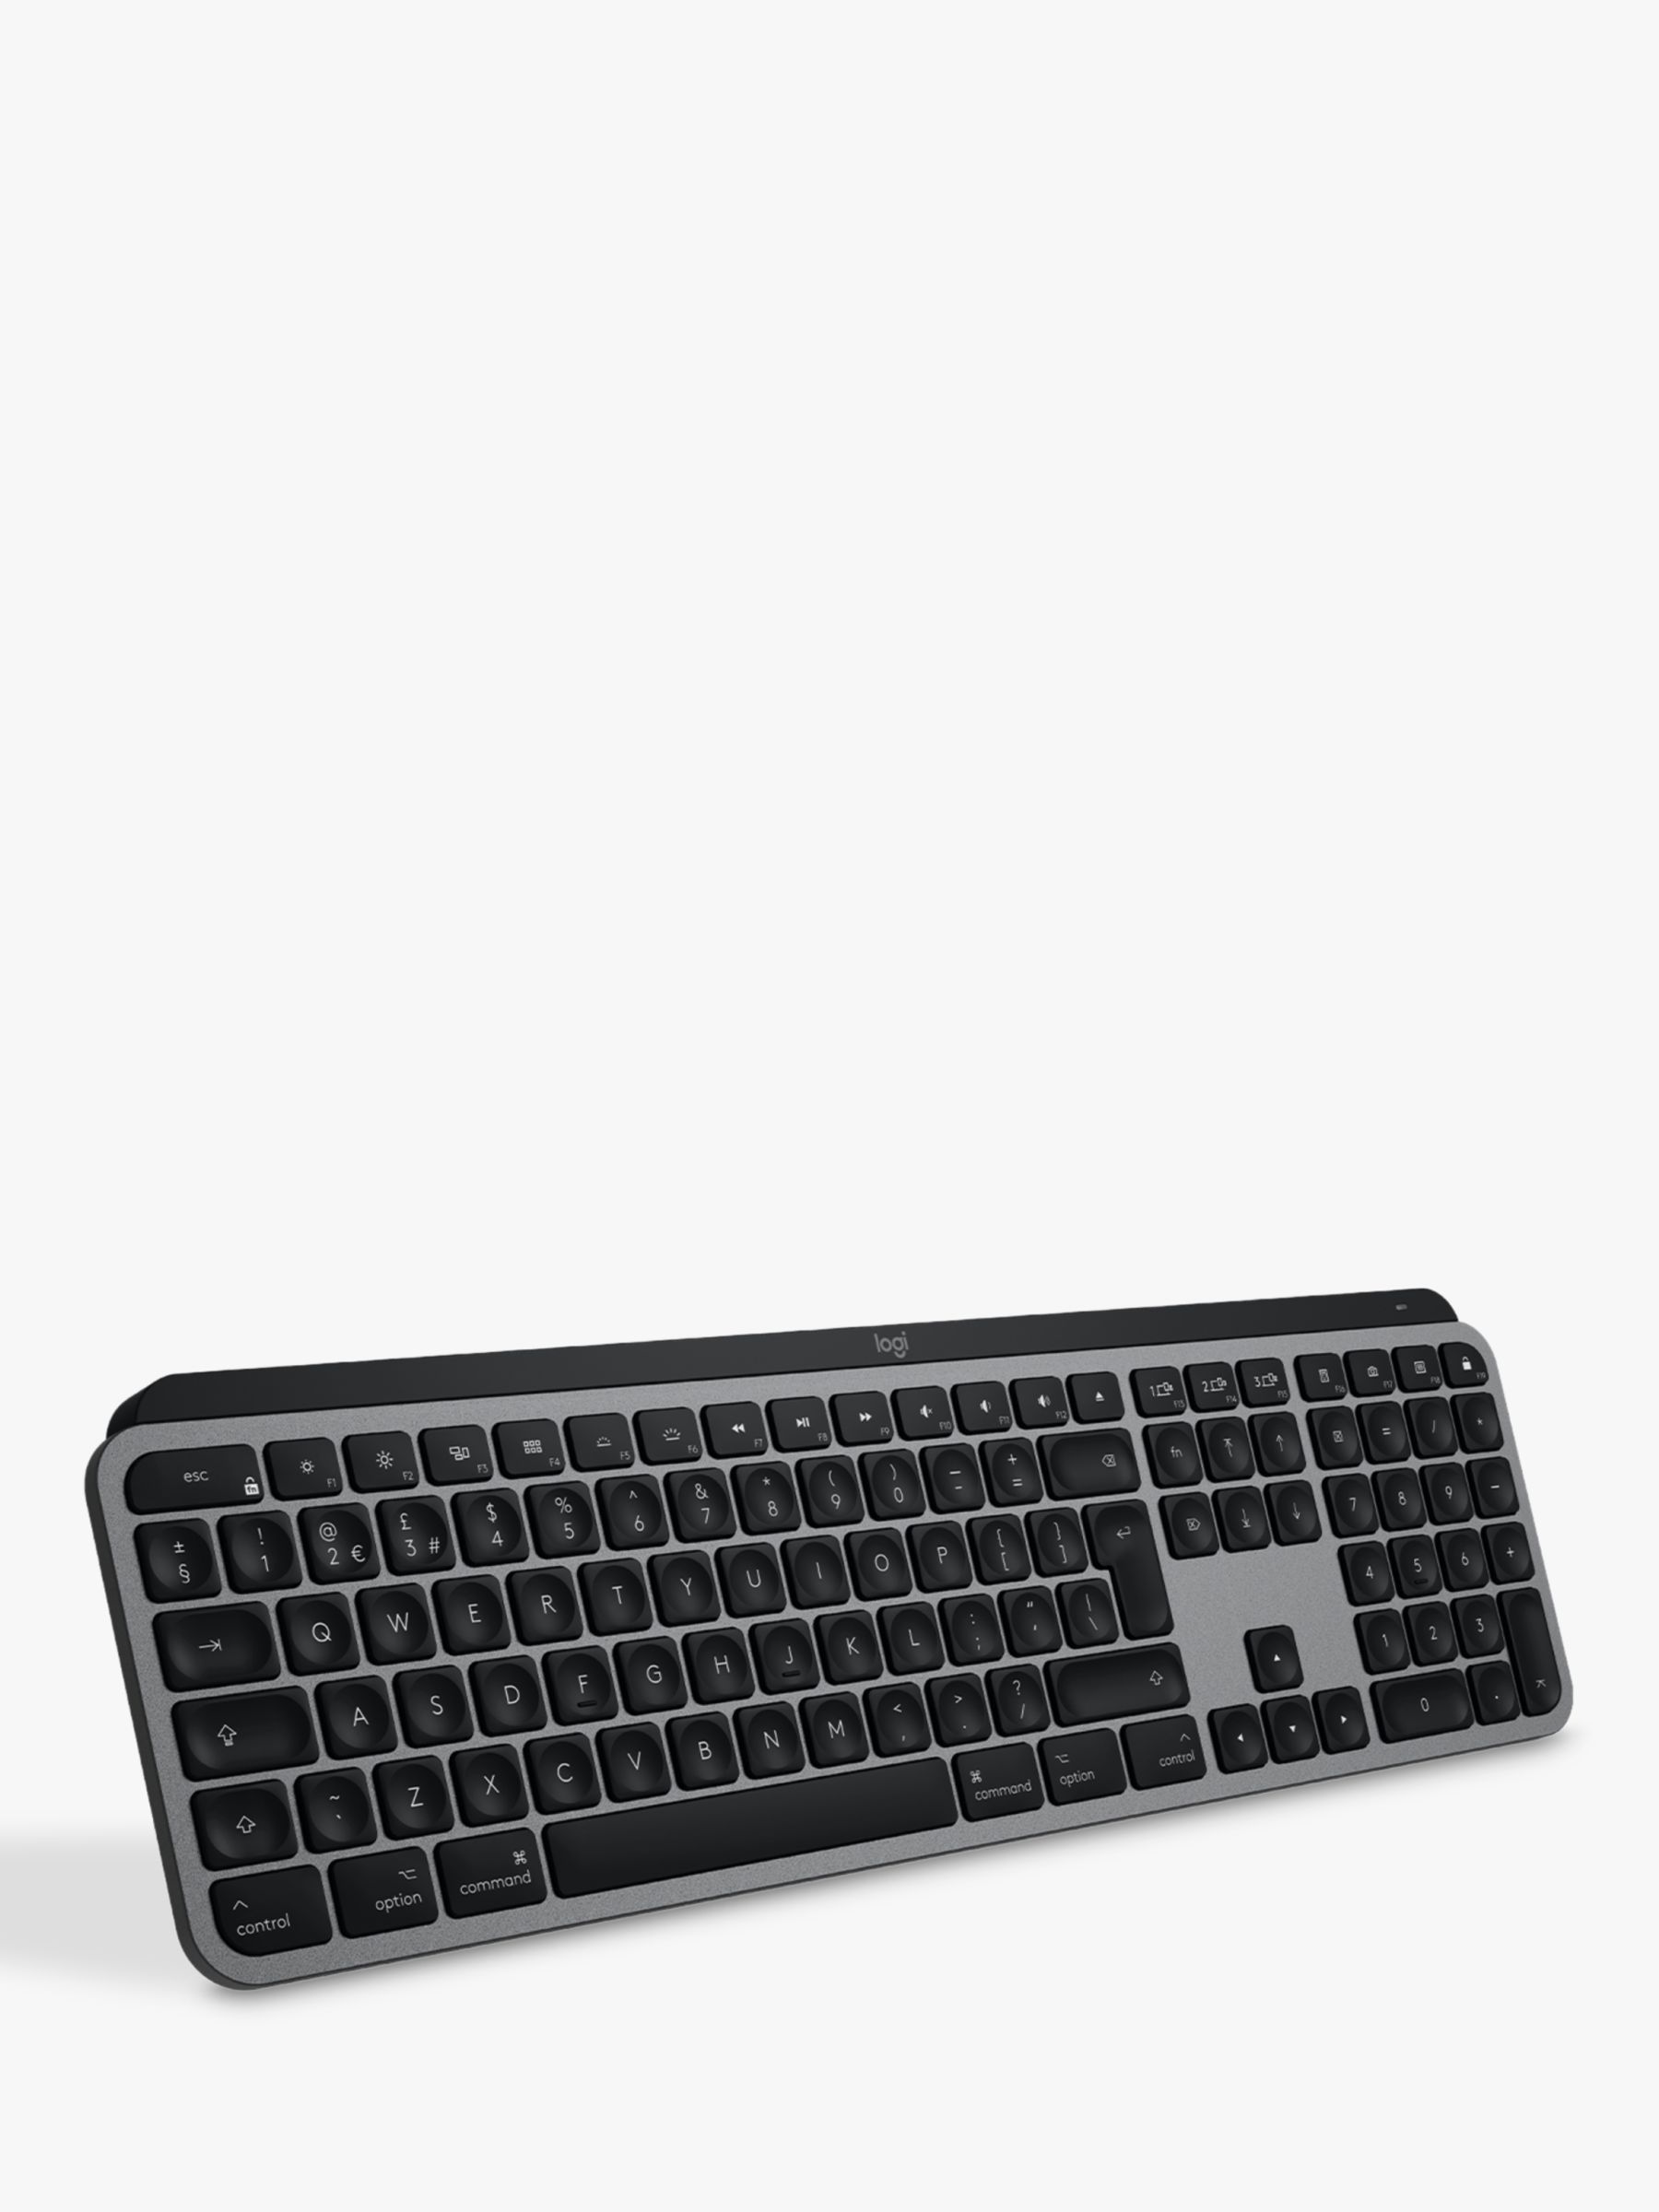 Logitech MX Wireless Keyboard for